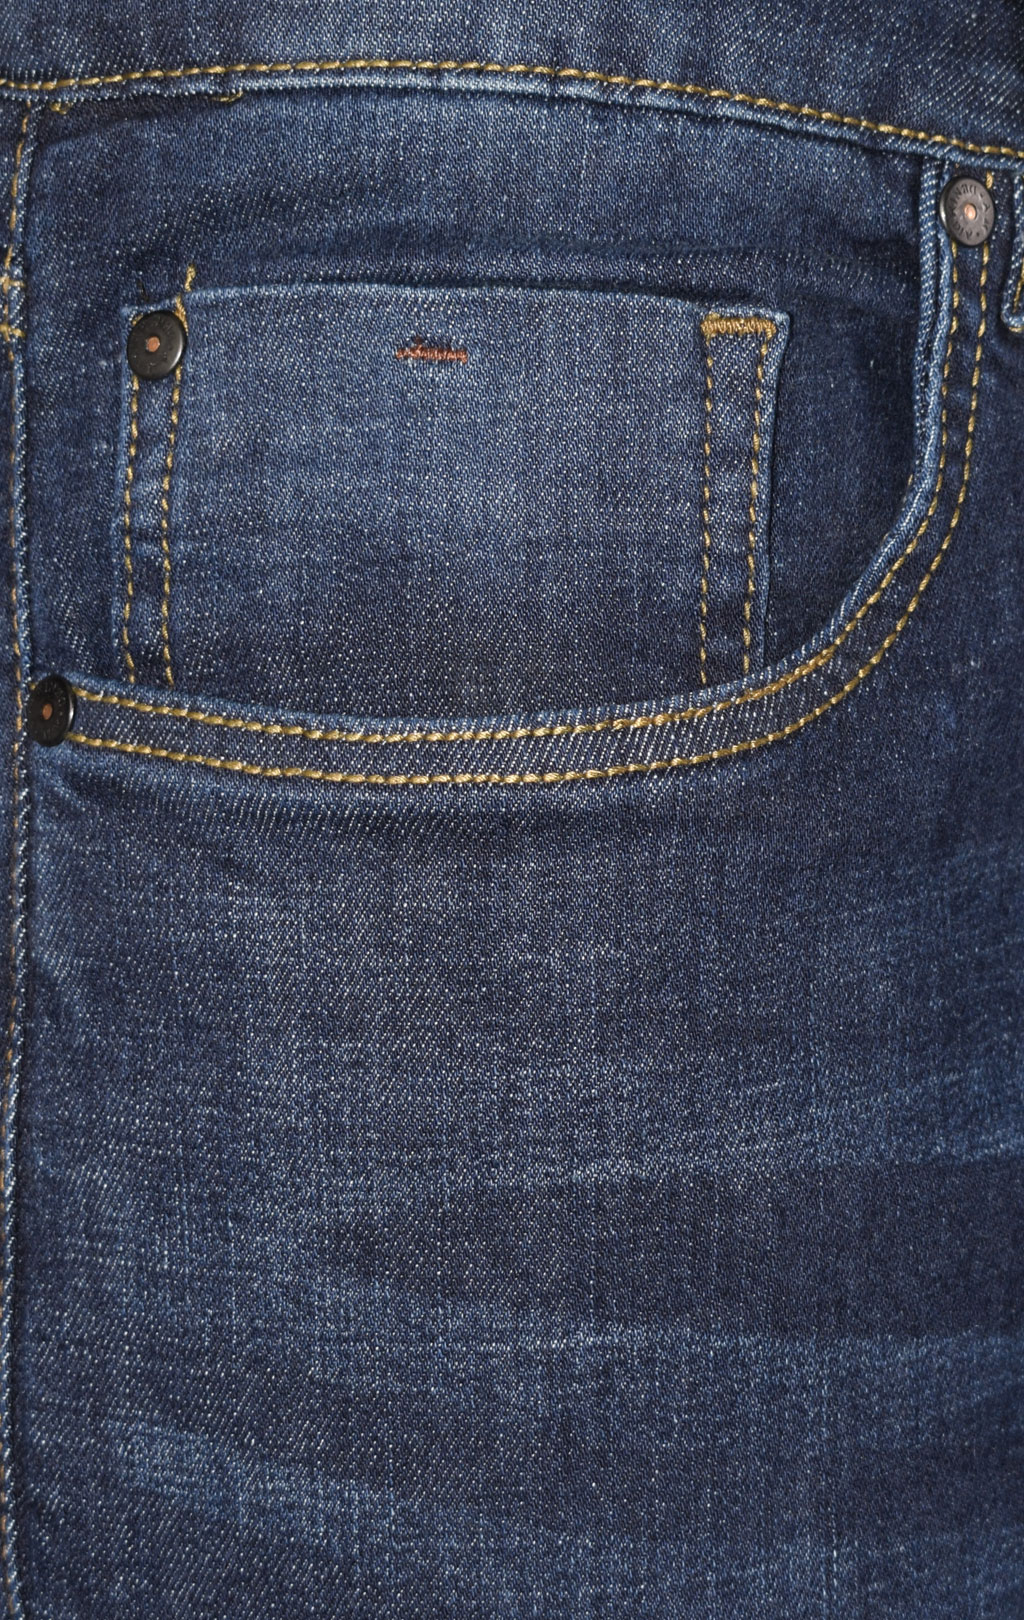 Джинсы AERONAUTICA MILITARE FW 22/23/PT jeans lavaggio scuro (PJ 192) 